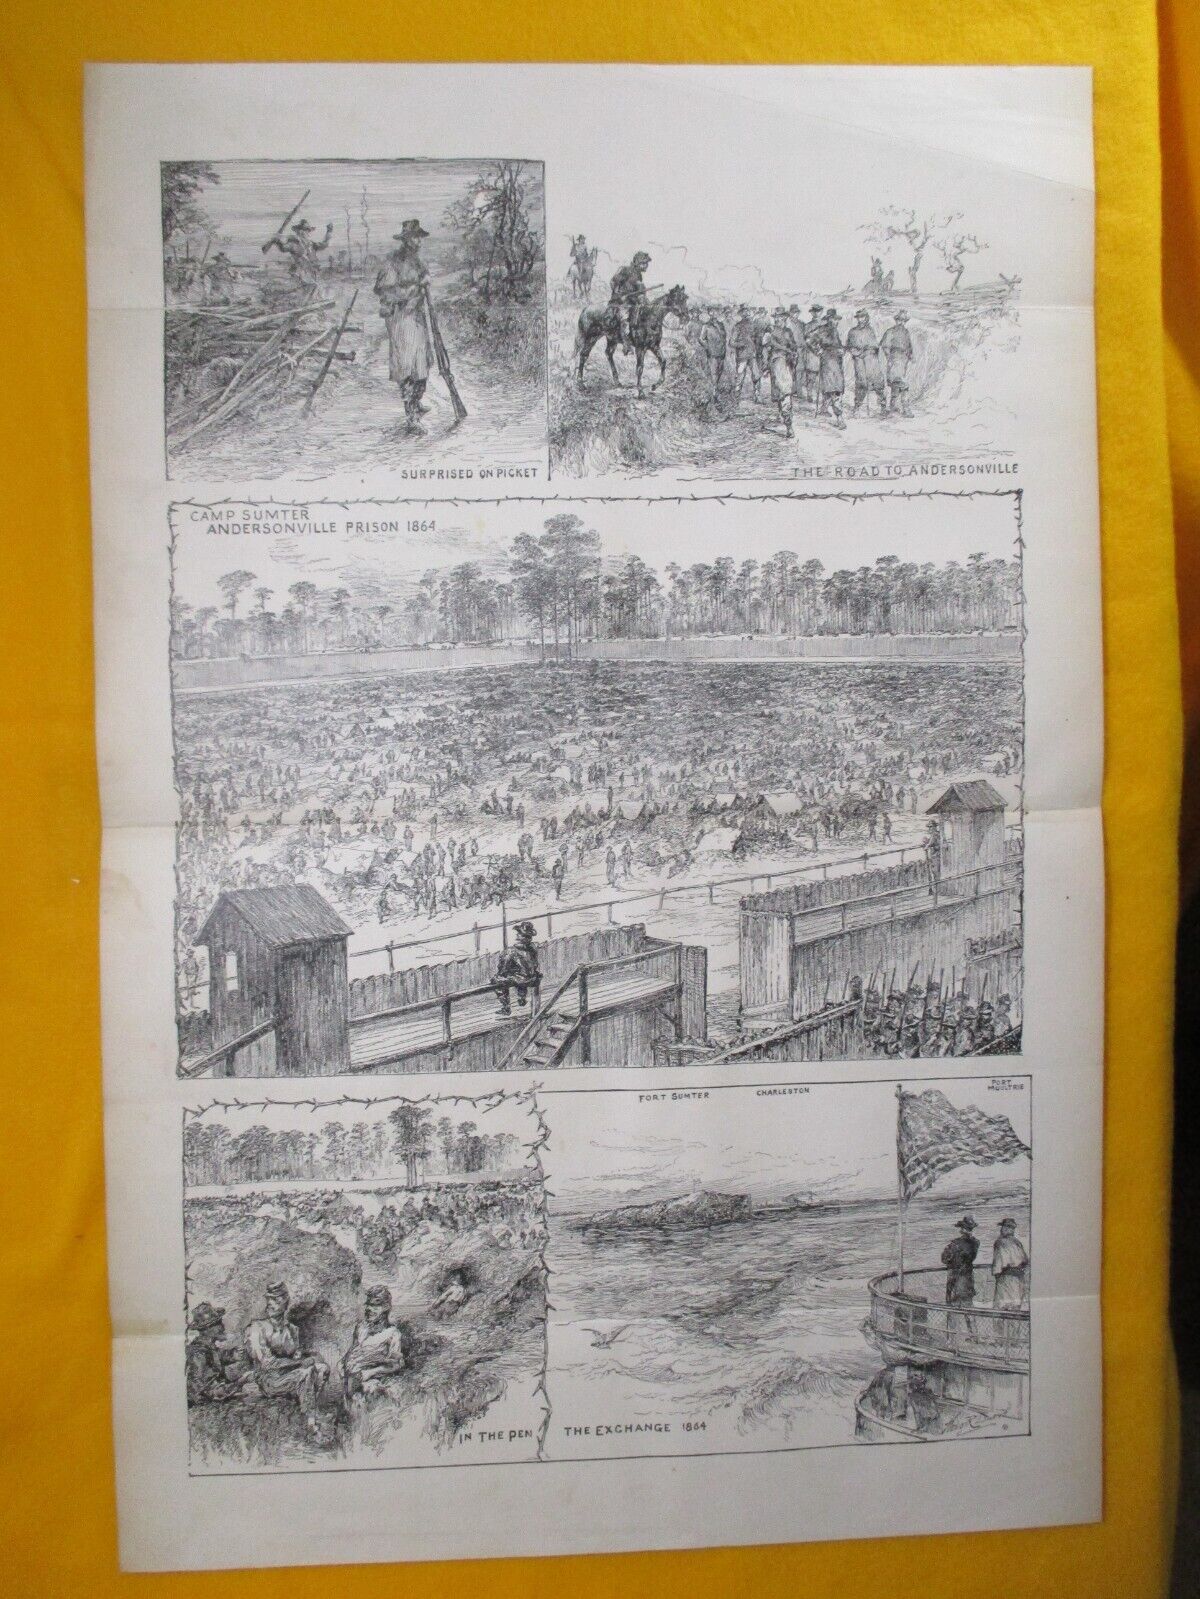 1885 Civil War Print - Confederate, Andersonville Prison, 1864, Georgia